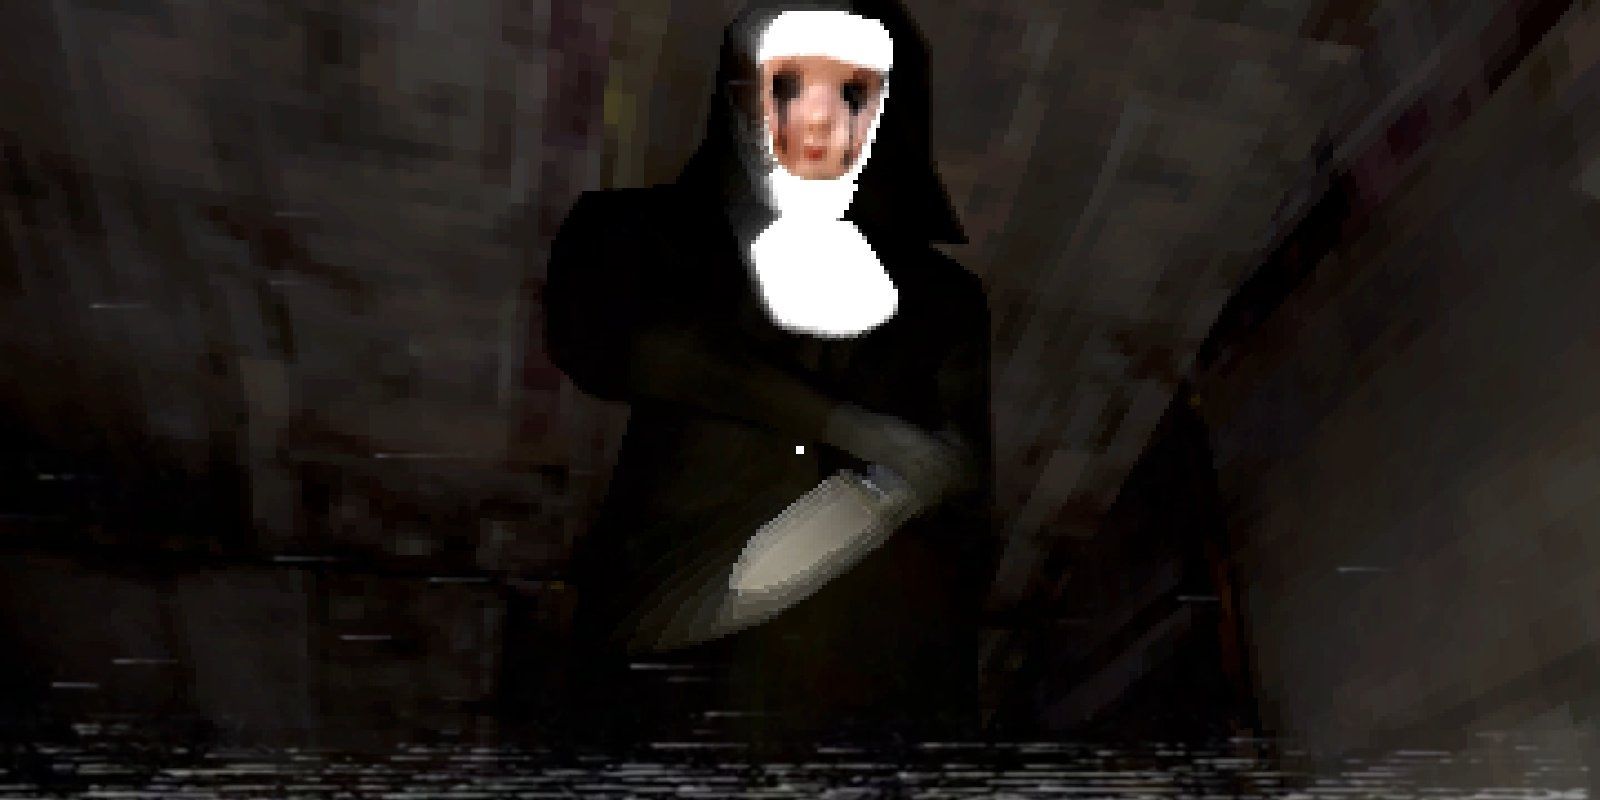 A screenshot of the nun from Nun Massacre wielding a knife.